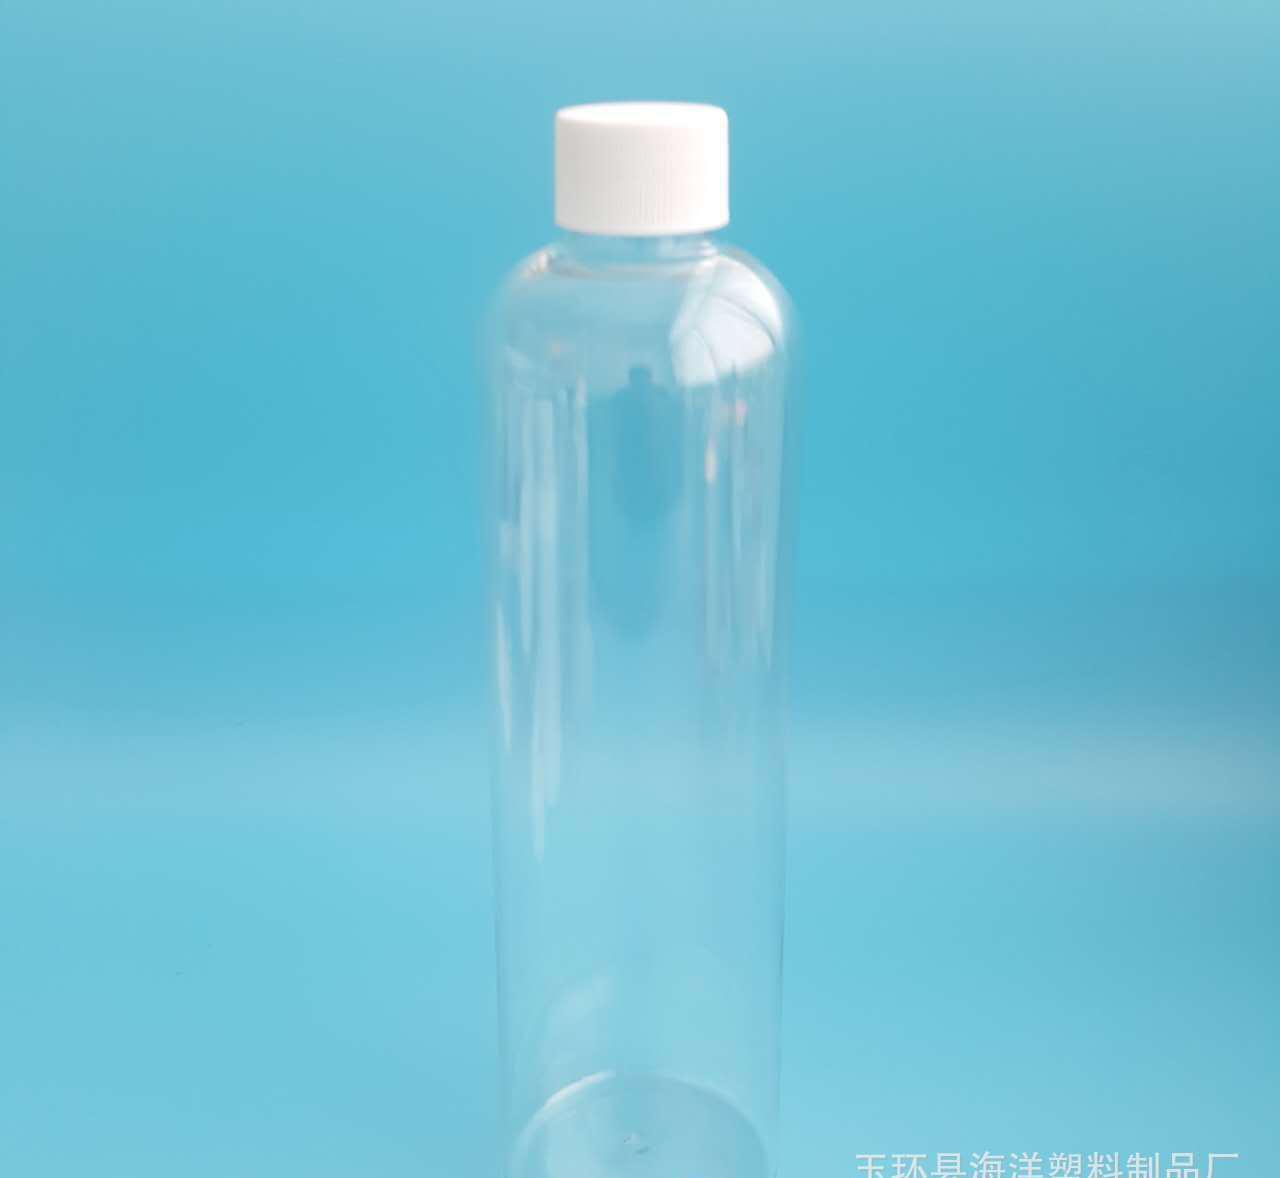 请注意:本图片来自台州市黄岩精图塑模有限公司提供的pet塑料瓶异形